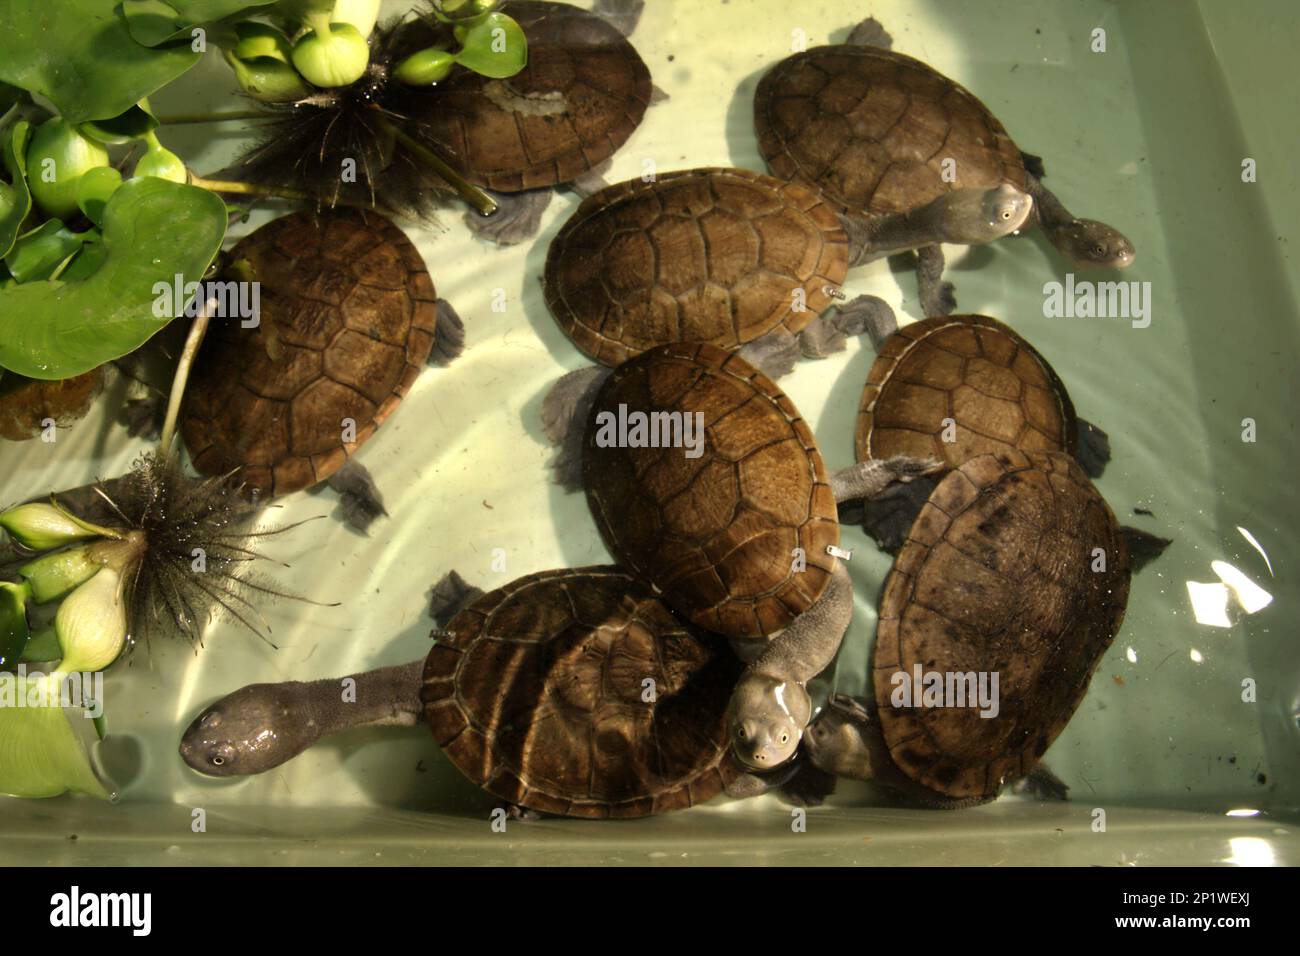 Süßwasserschildkröten, die vom Aussterben bedroht (kritisch gefährdet) sind und auf der indonesischen Rote-Insel endemisch sind, die Schlangenschildkröten (Chelodina mcccordi), werden in einer lizenzierten Ex-situ-Zuchteinrichtung in Jakarta fotografiert. „Die Rote-Insel-Schildkröte mit Schlangenhalsausschnitt ist ein verblüffendes Beispiel dafür, wie nicht nachhaltiger Handel ganze Arten an den Rand des Aussterbens gebracht hat“, so Jim Breheny, Executive Vice President und Director des Bronx Zoo der Wildlife Conservation Society (WCS), veröffentlicht am 7. September 2022 im WCS Newsroom. Stockfoto